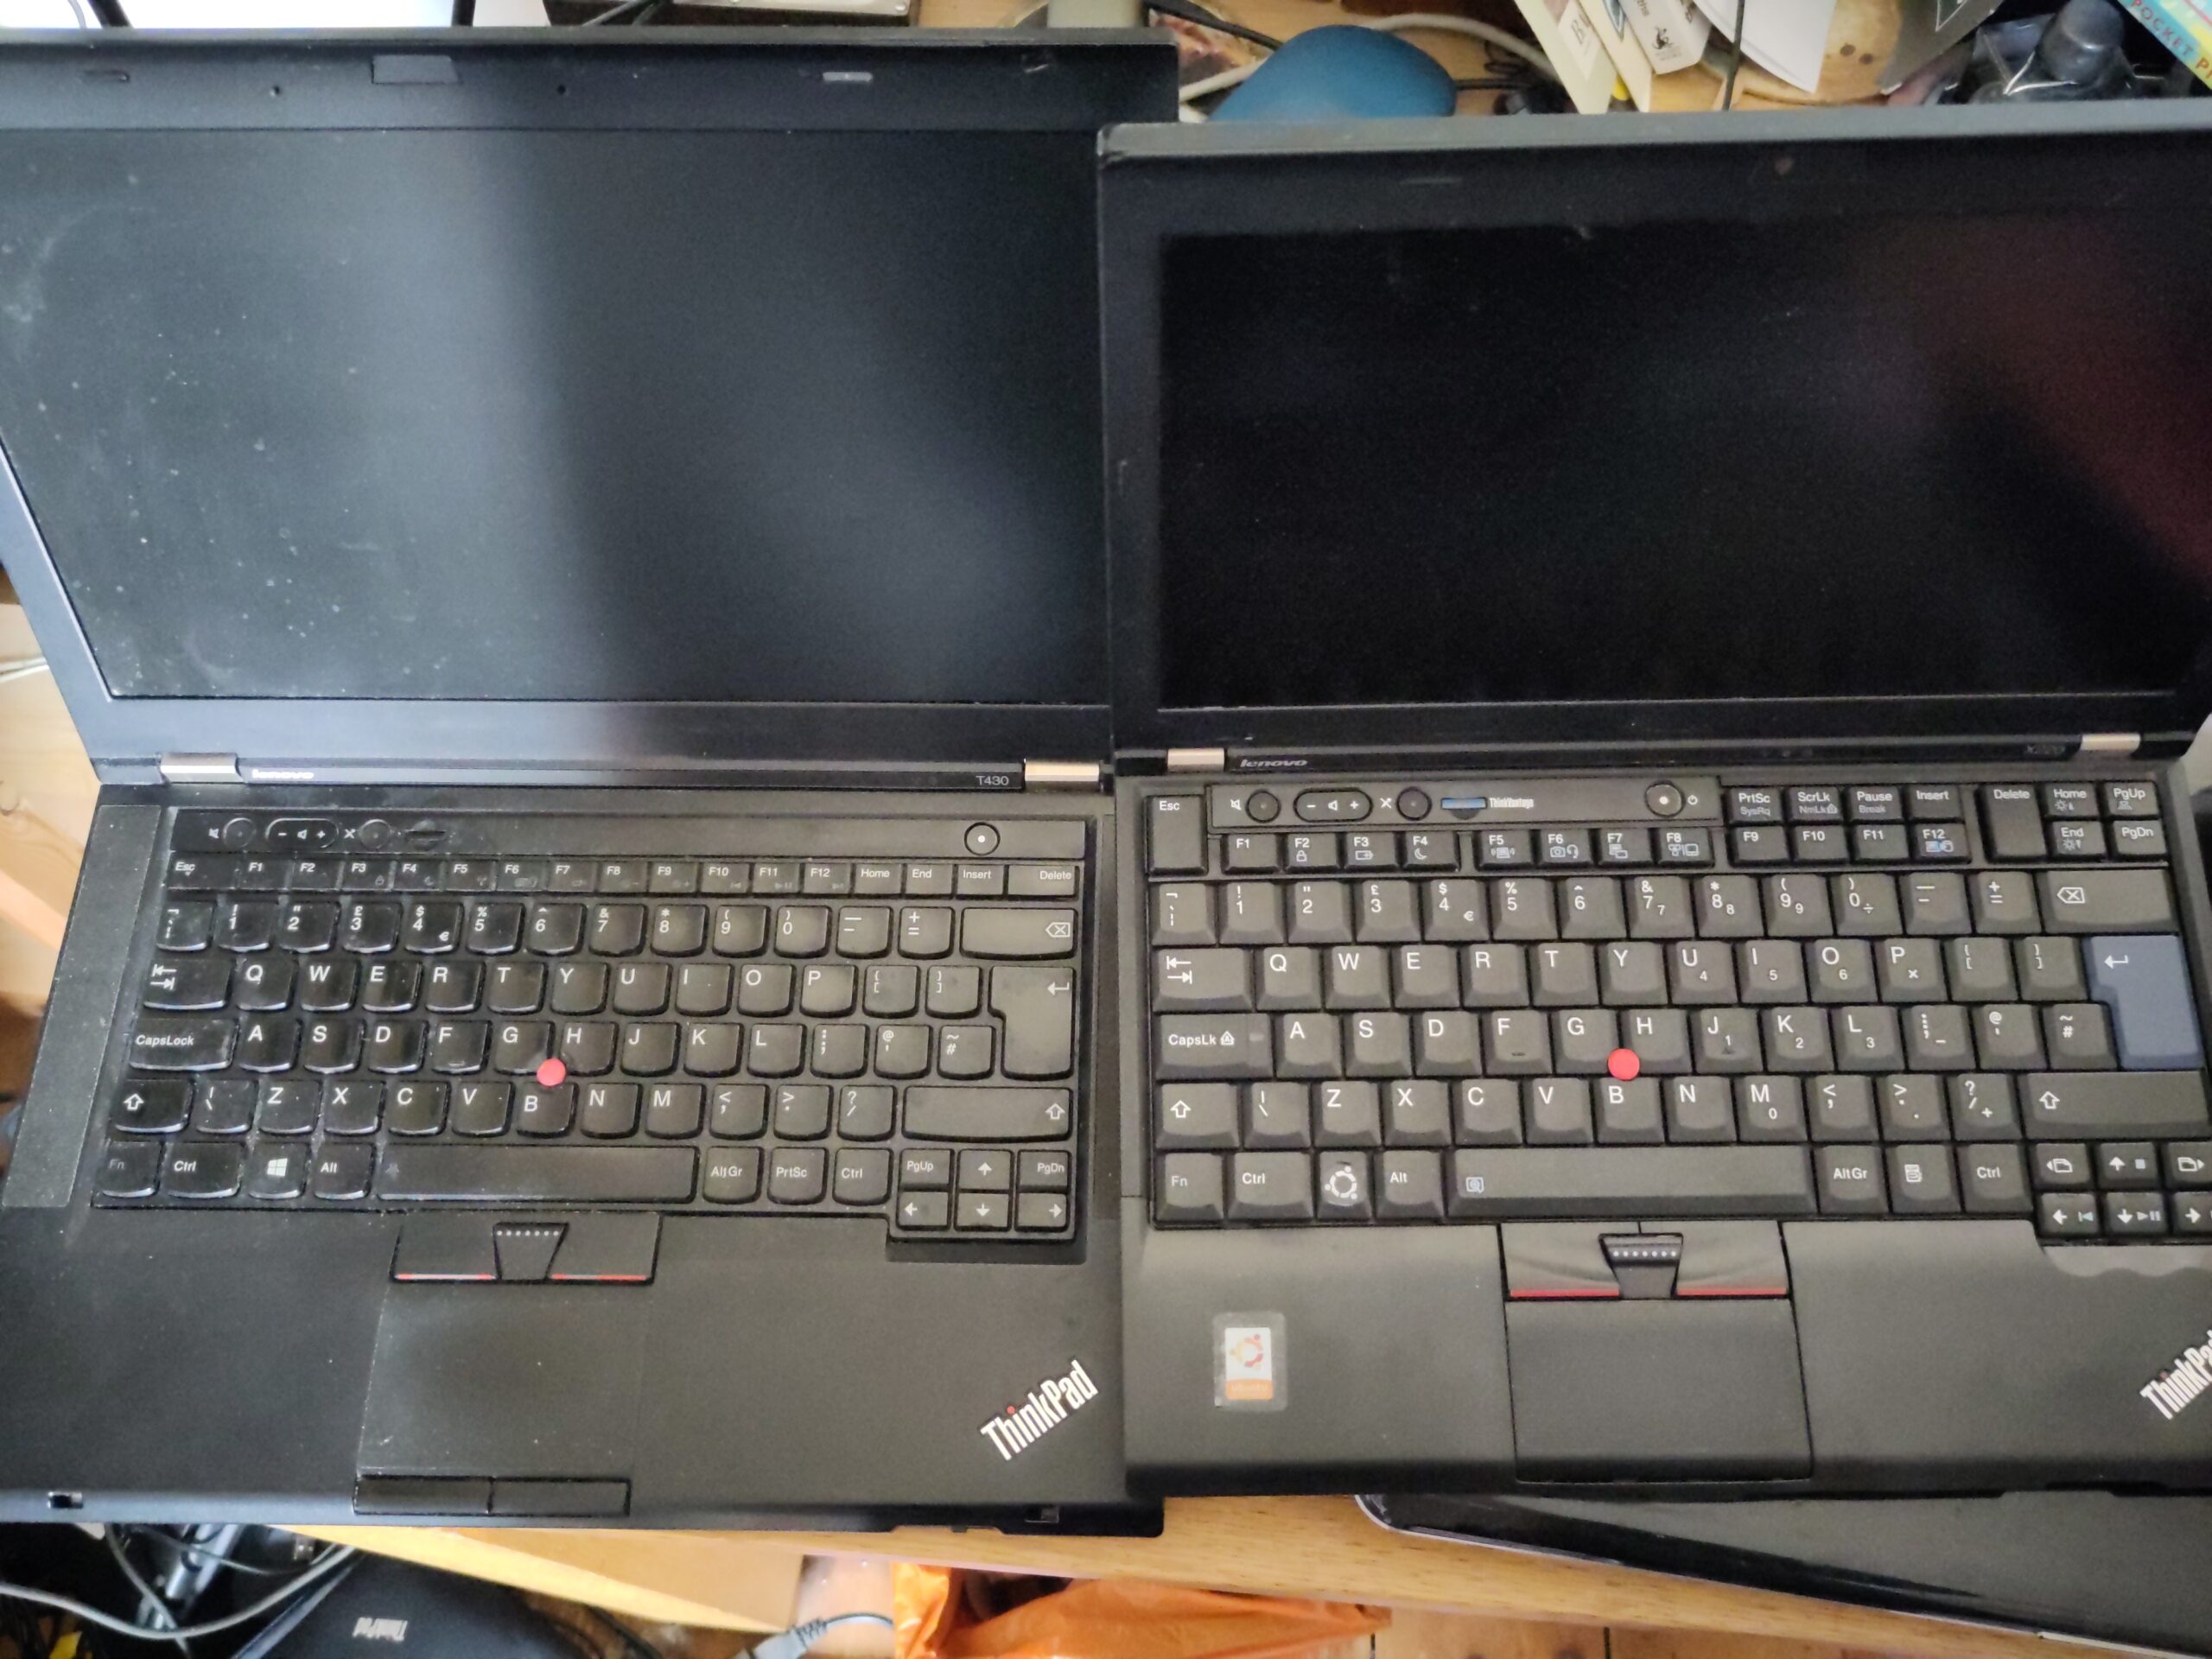 Two open laptops, side-by-side.